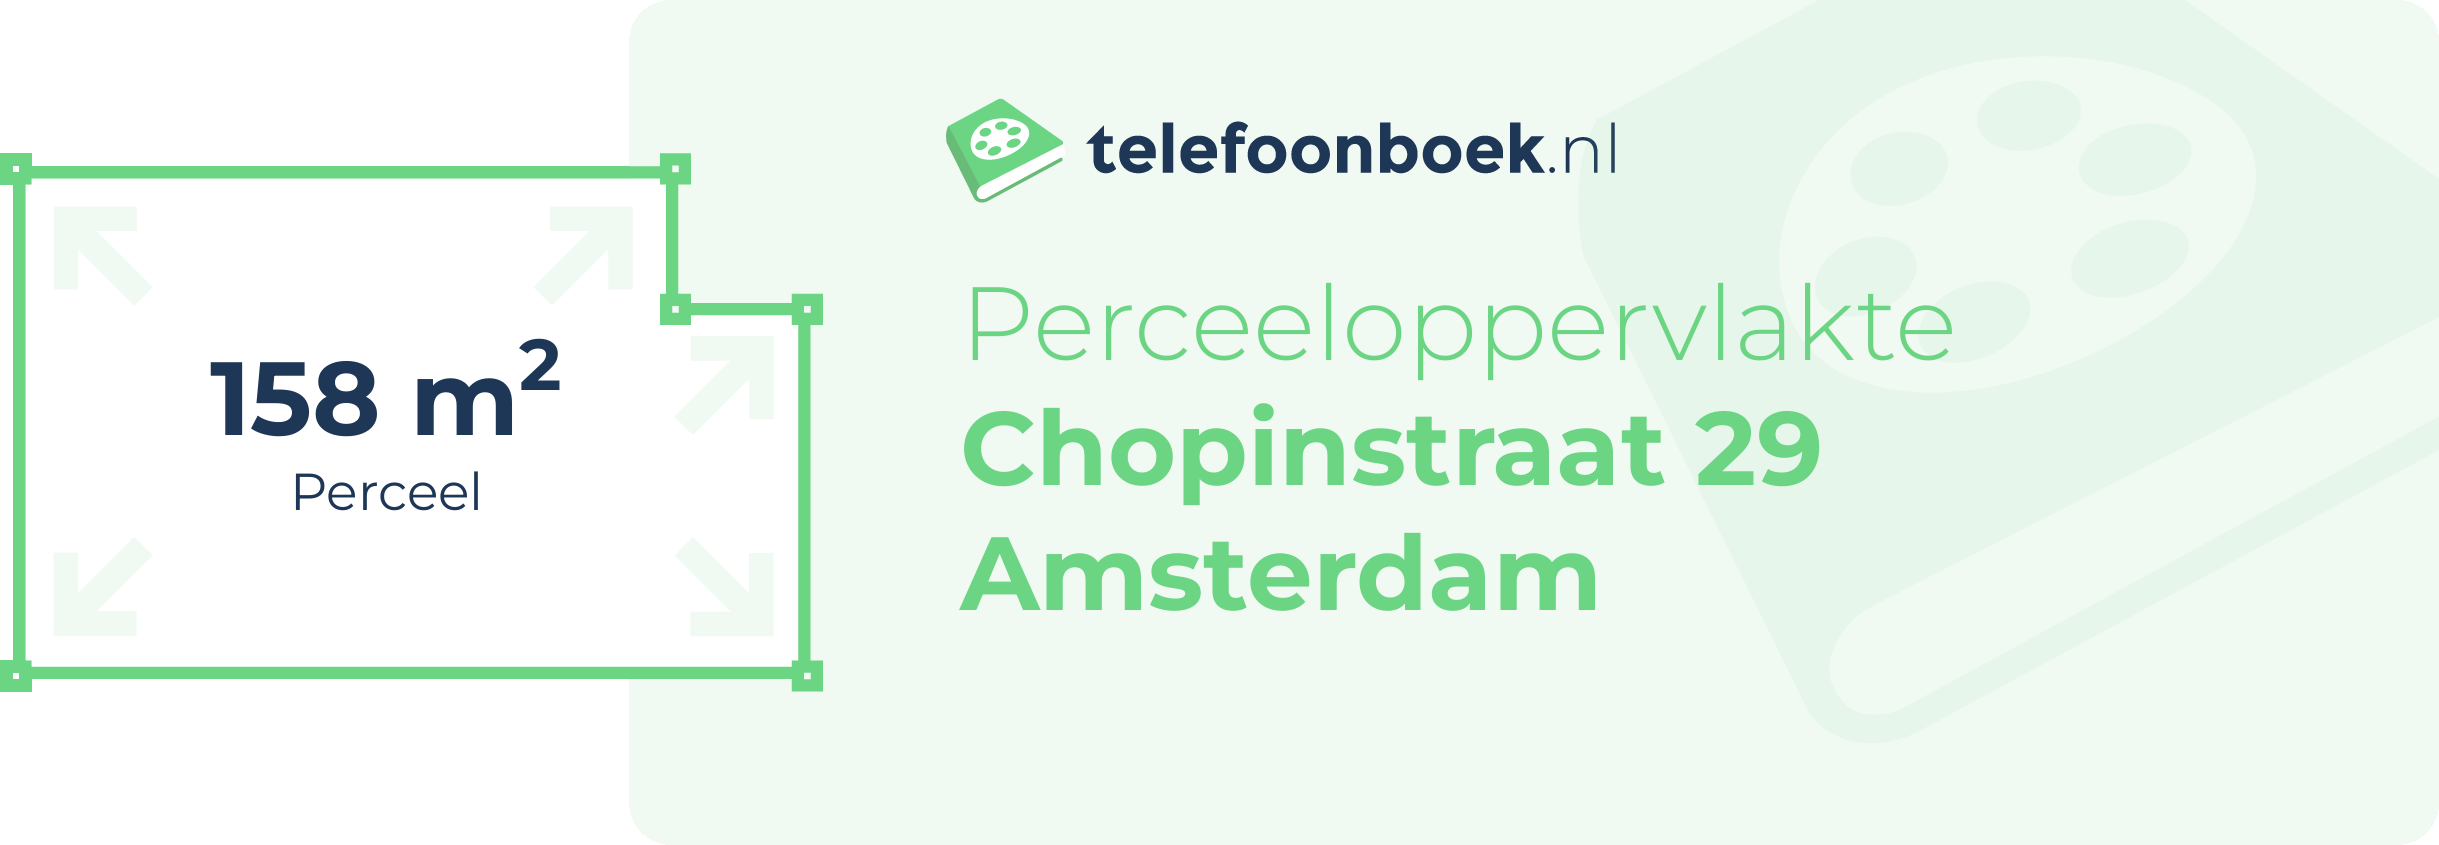 Perceeloppervlakte Chopinstraat 29 Amsterdam